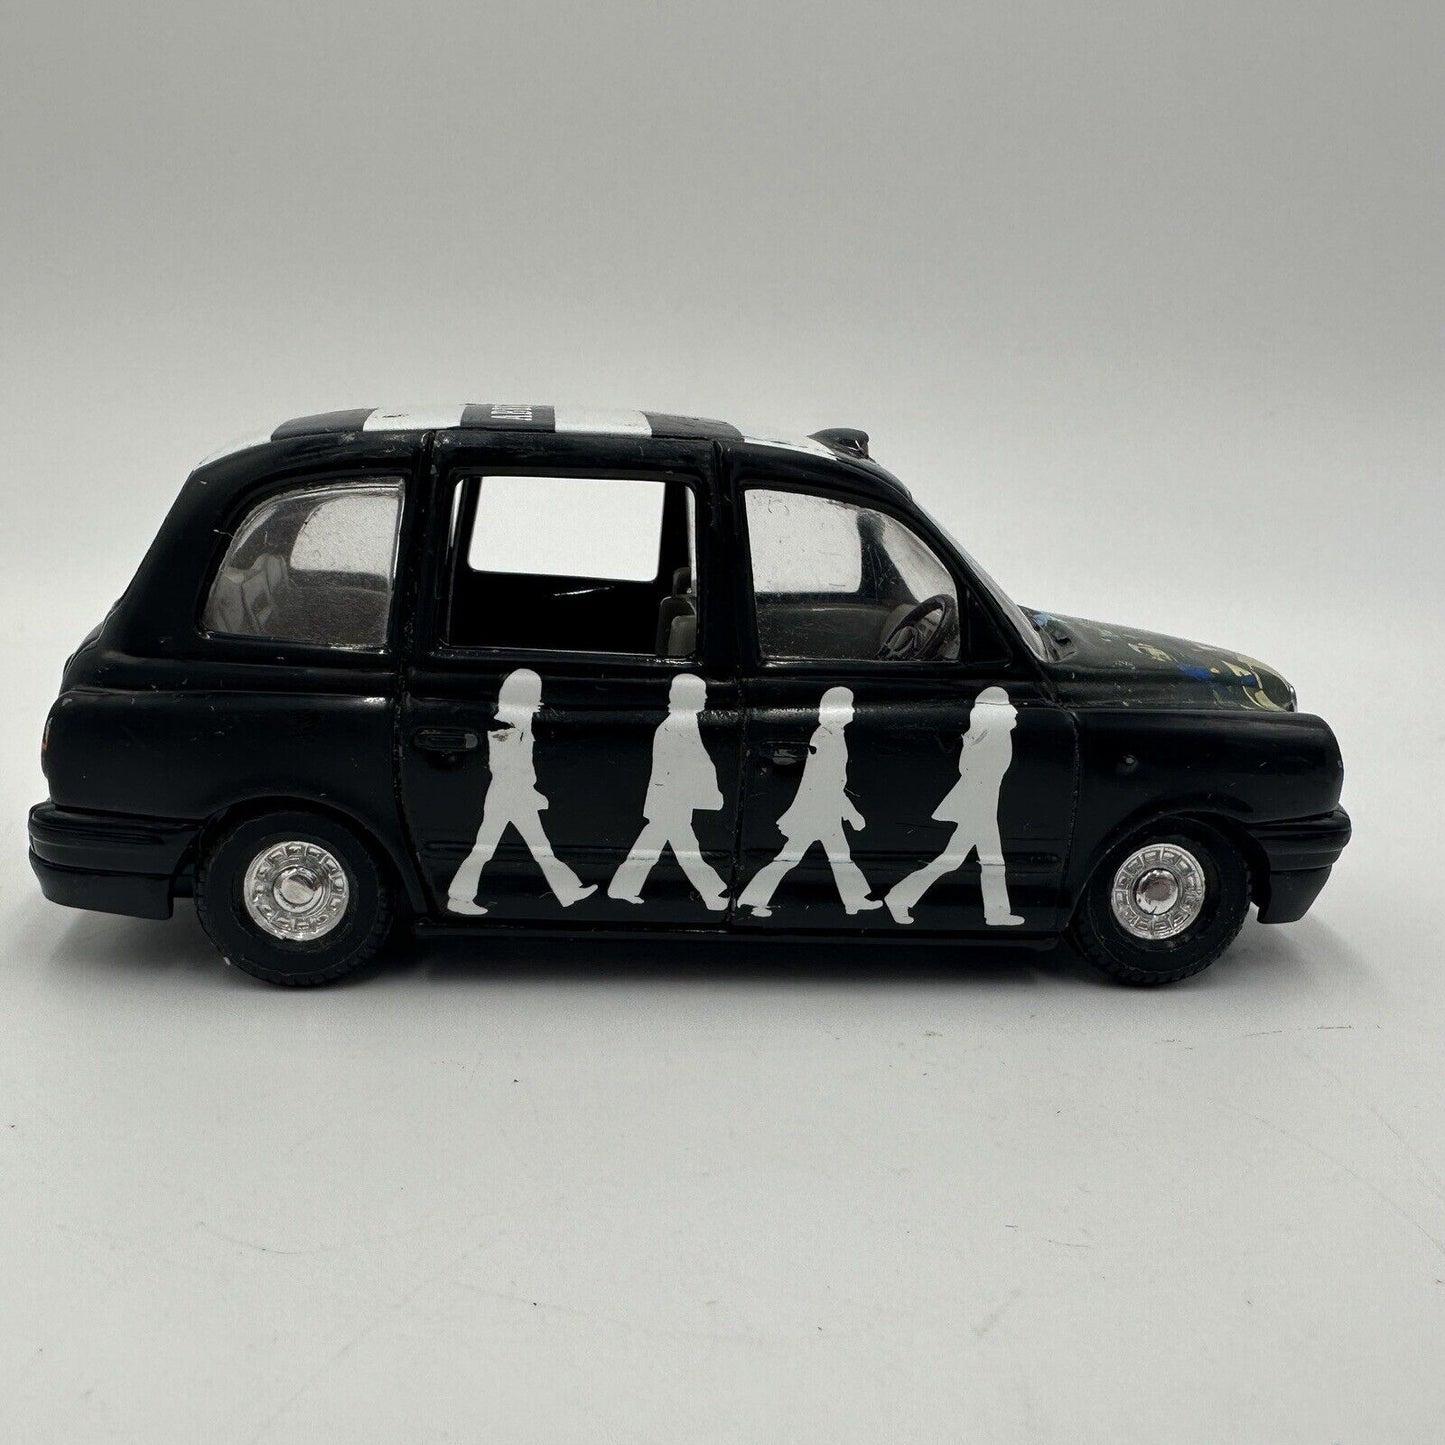 Vintage Corgi The Beatles Abbey Road Album Cover Die-Cast London Taxi Cab